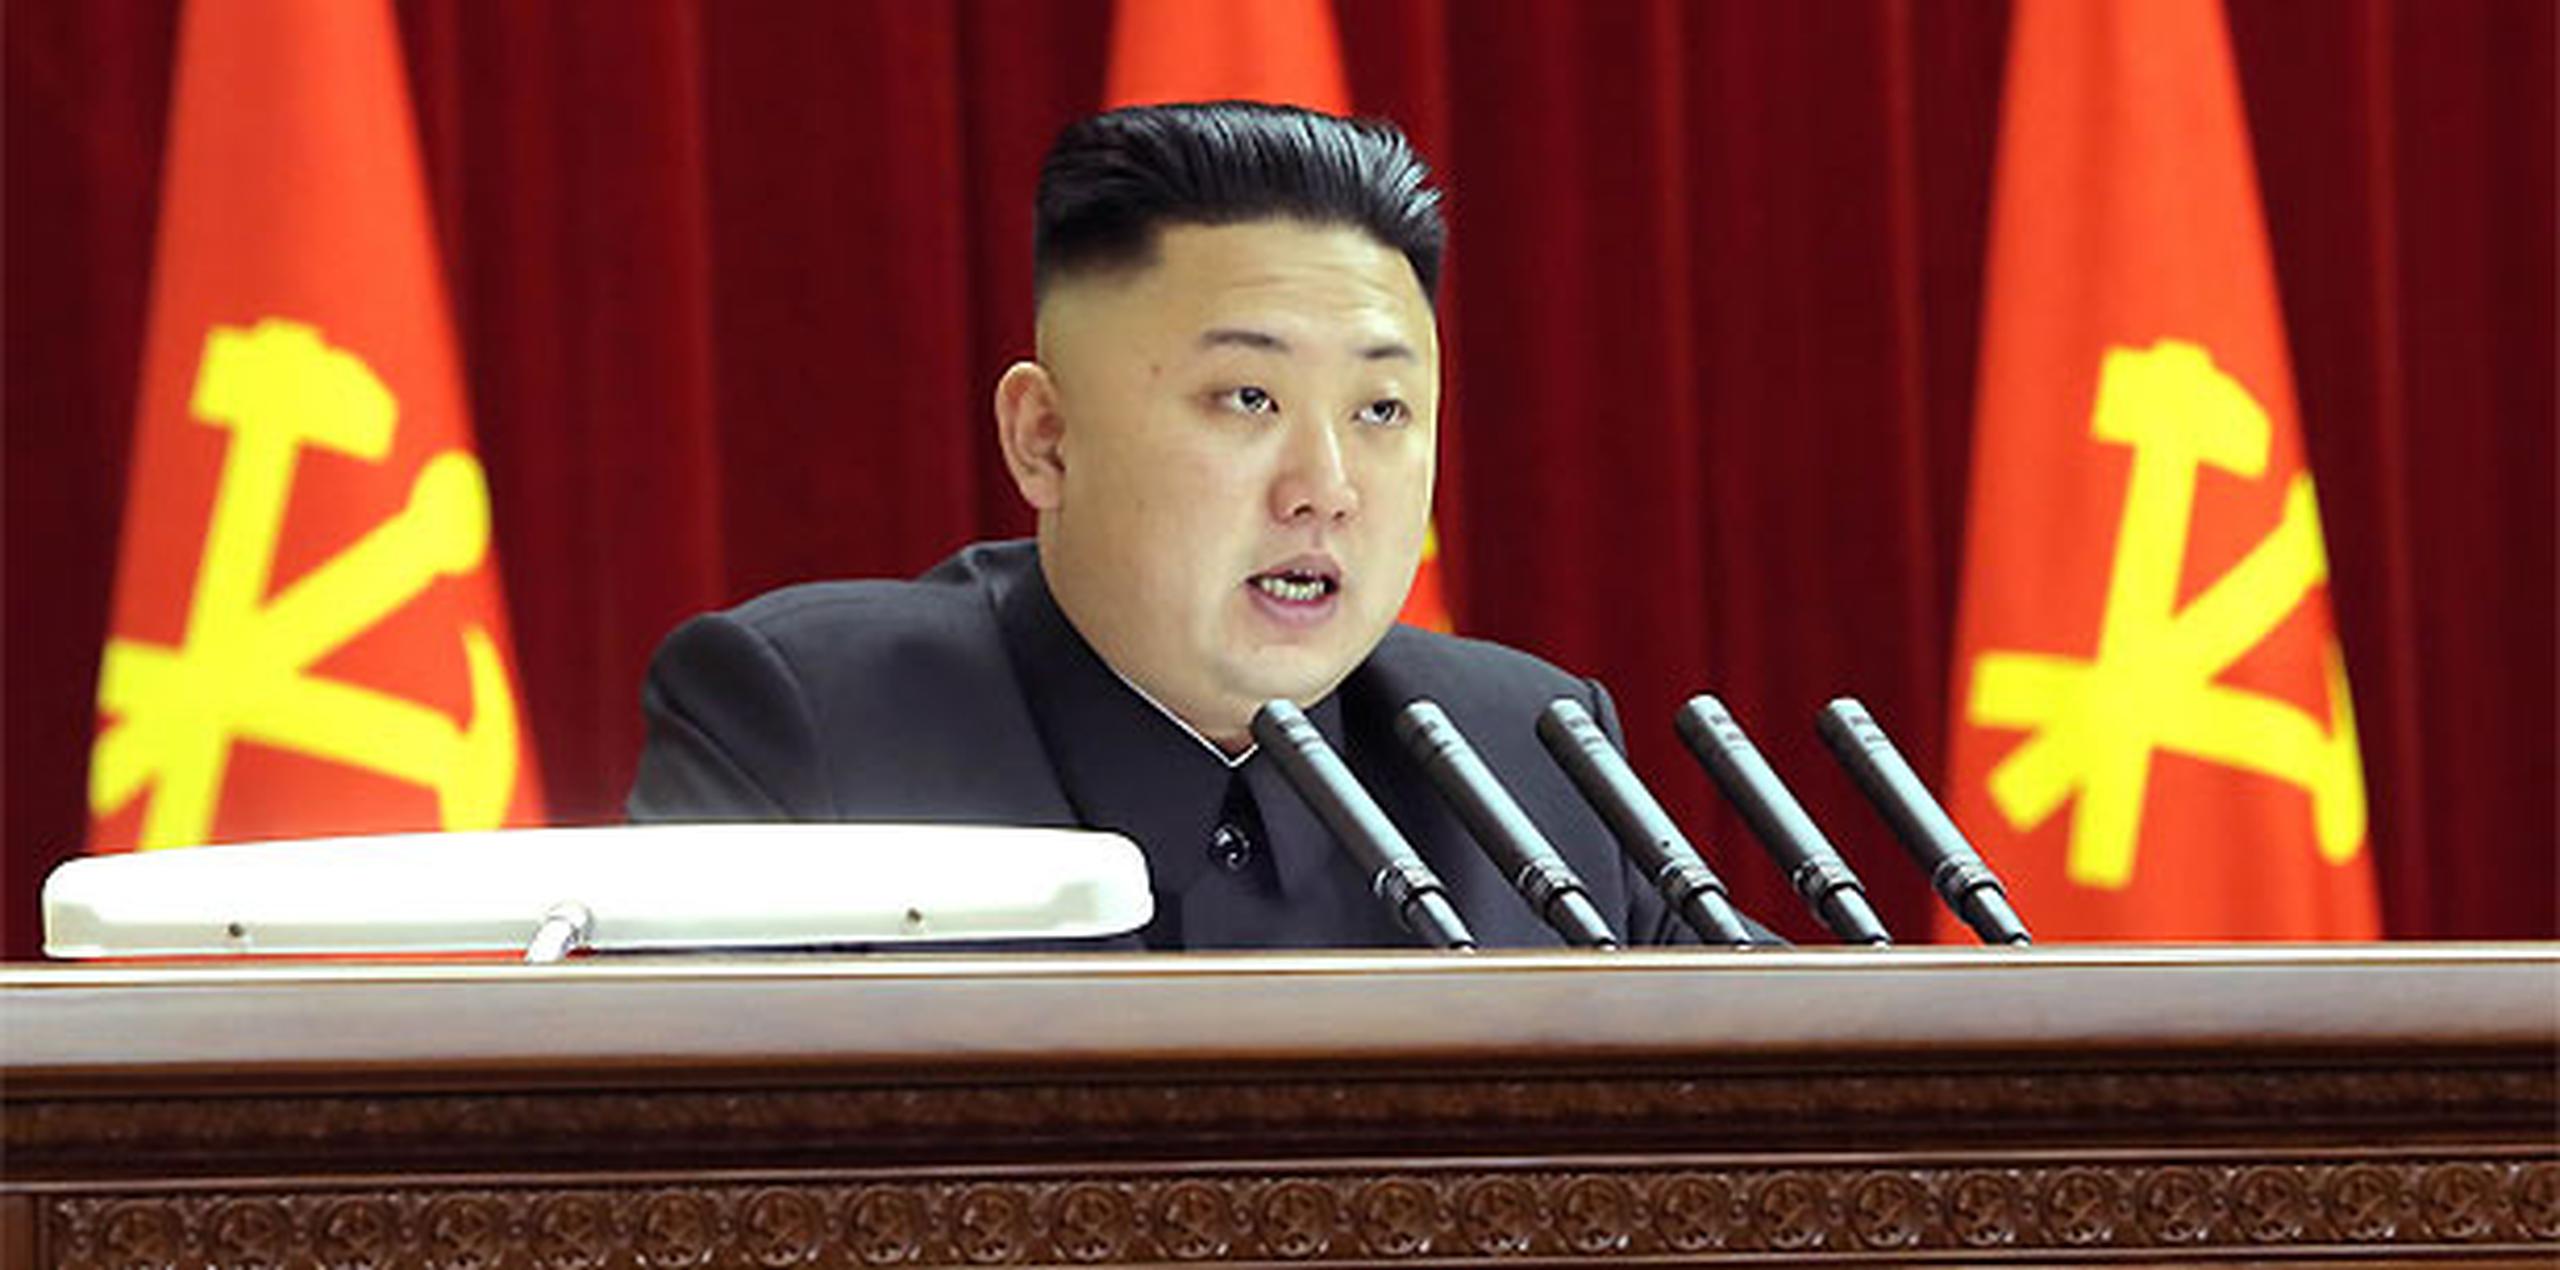 La mayoría de los expertos creen que el régimen comunista liderado por Kim Jong-un no tiene intención de iniciar una guerra, y emplea sus amenazas como estrategia para reforzar la posición de su Gobierno totalitario dentro del país y ante el exterior. (Archivo)